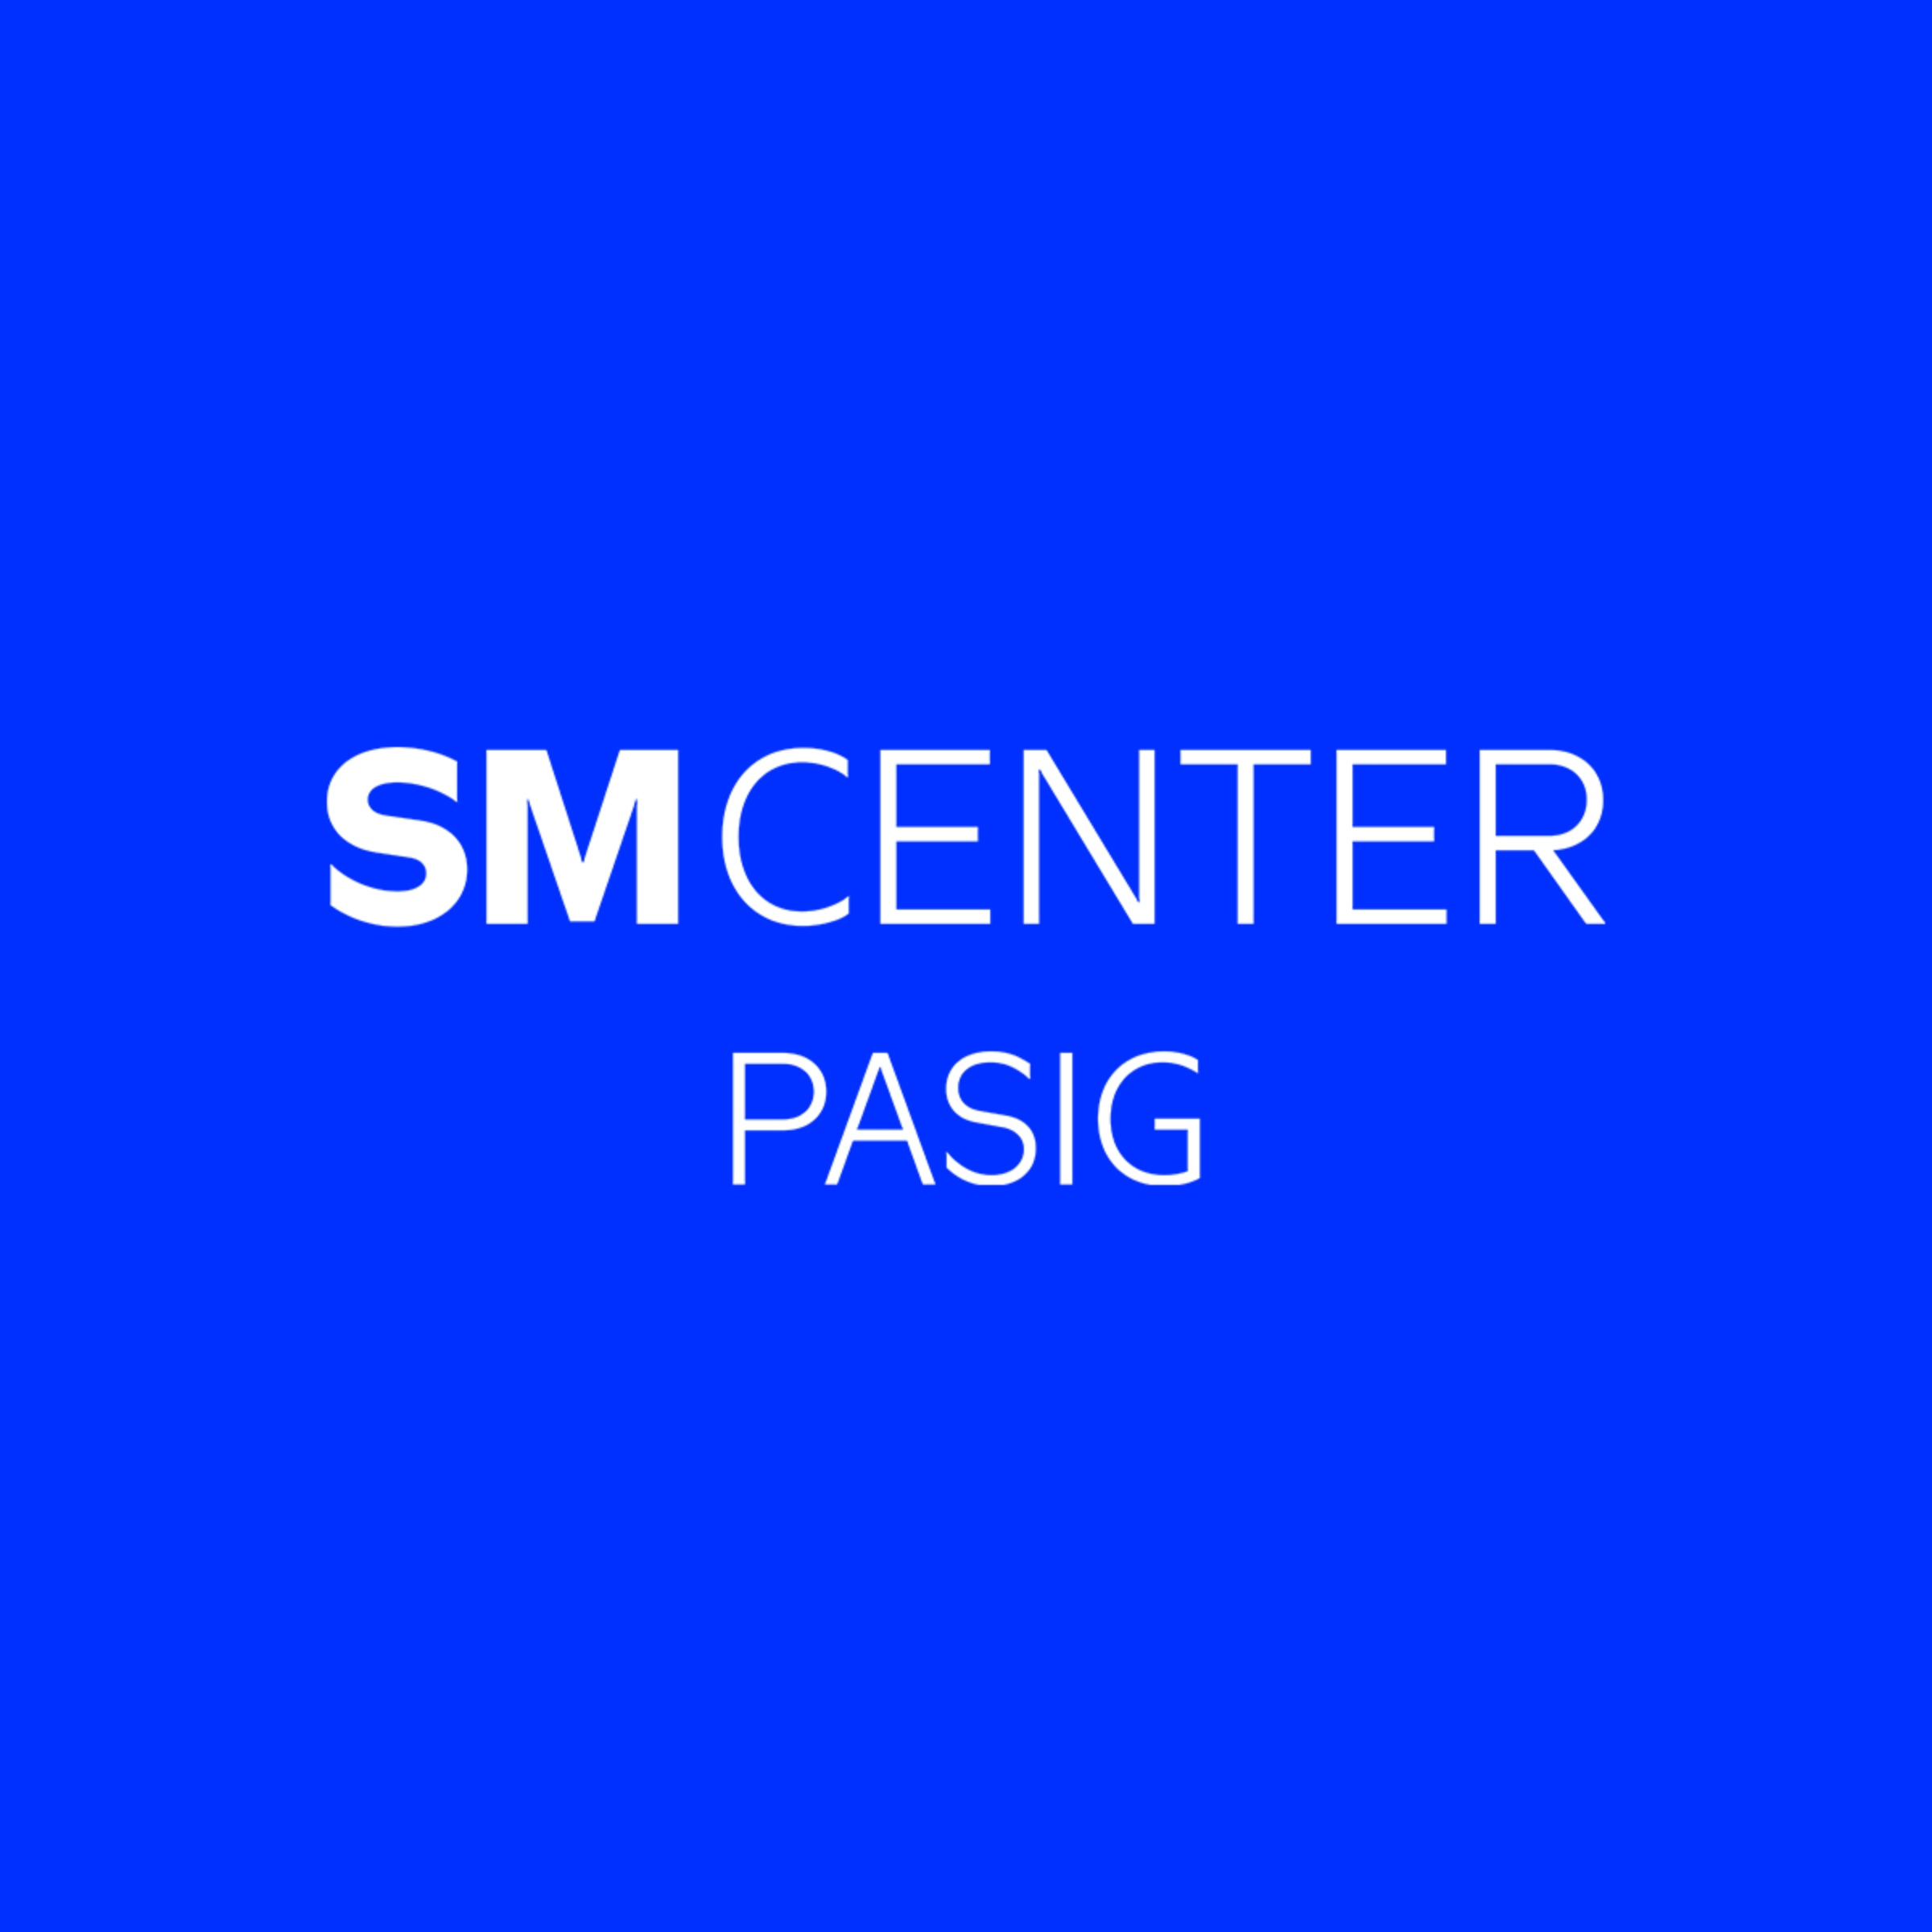 SM Center Pasig